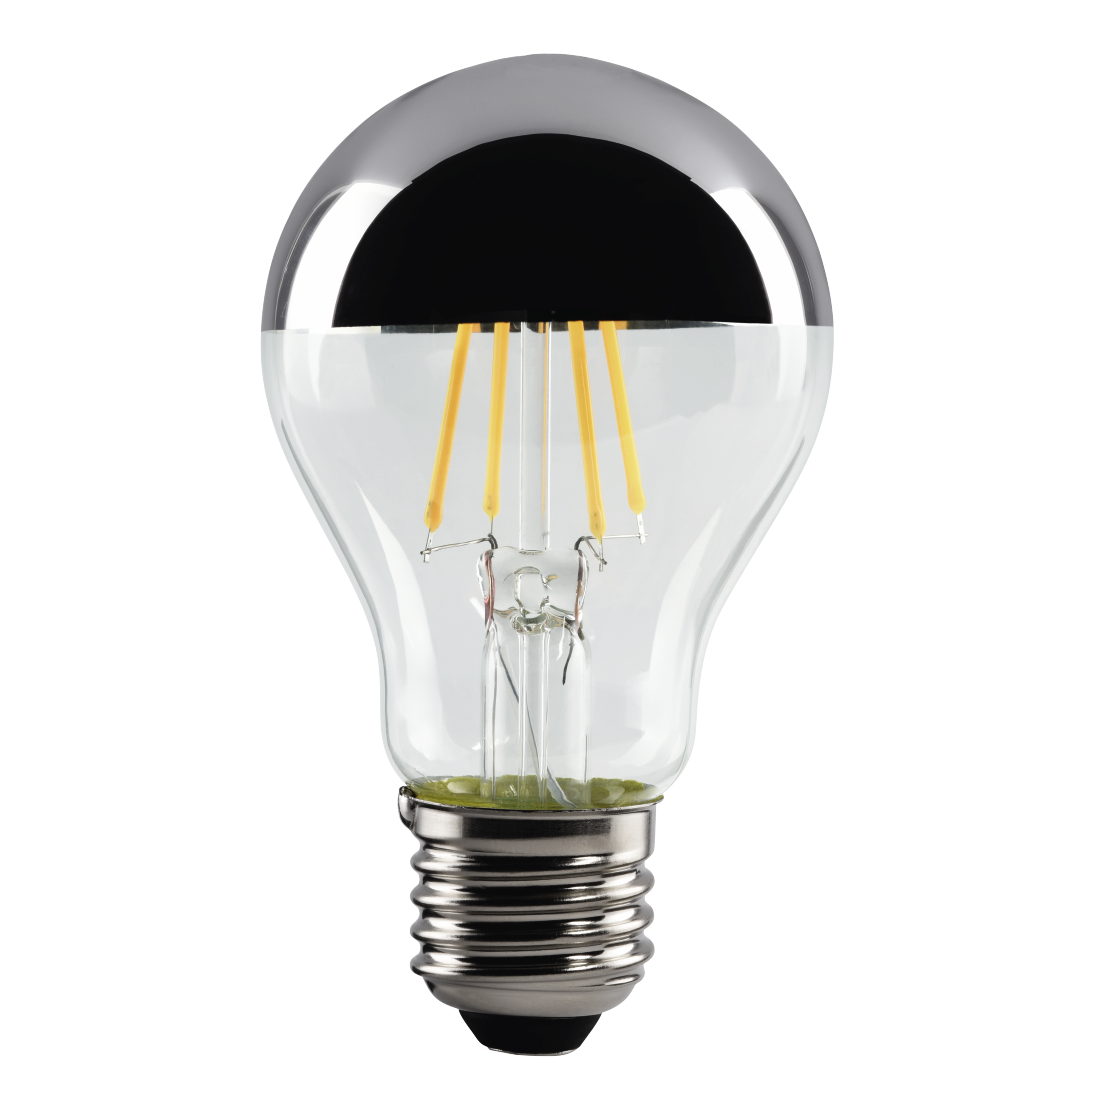 abx High-Res Image - Xavax, Ampoule filament LED, E27, 400lm rempl. ampoule incand., 35W, blc chd